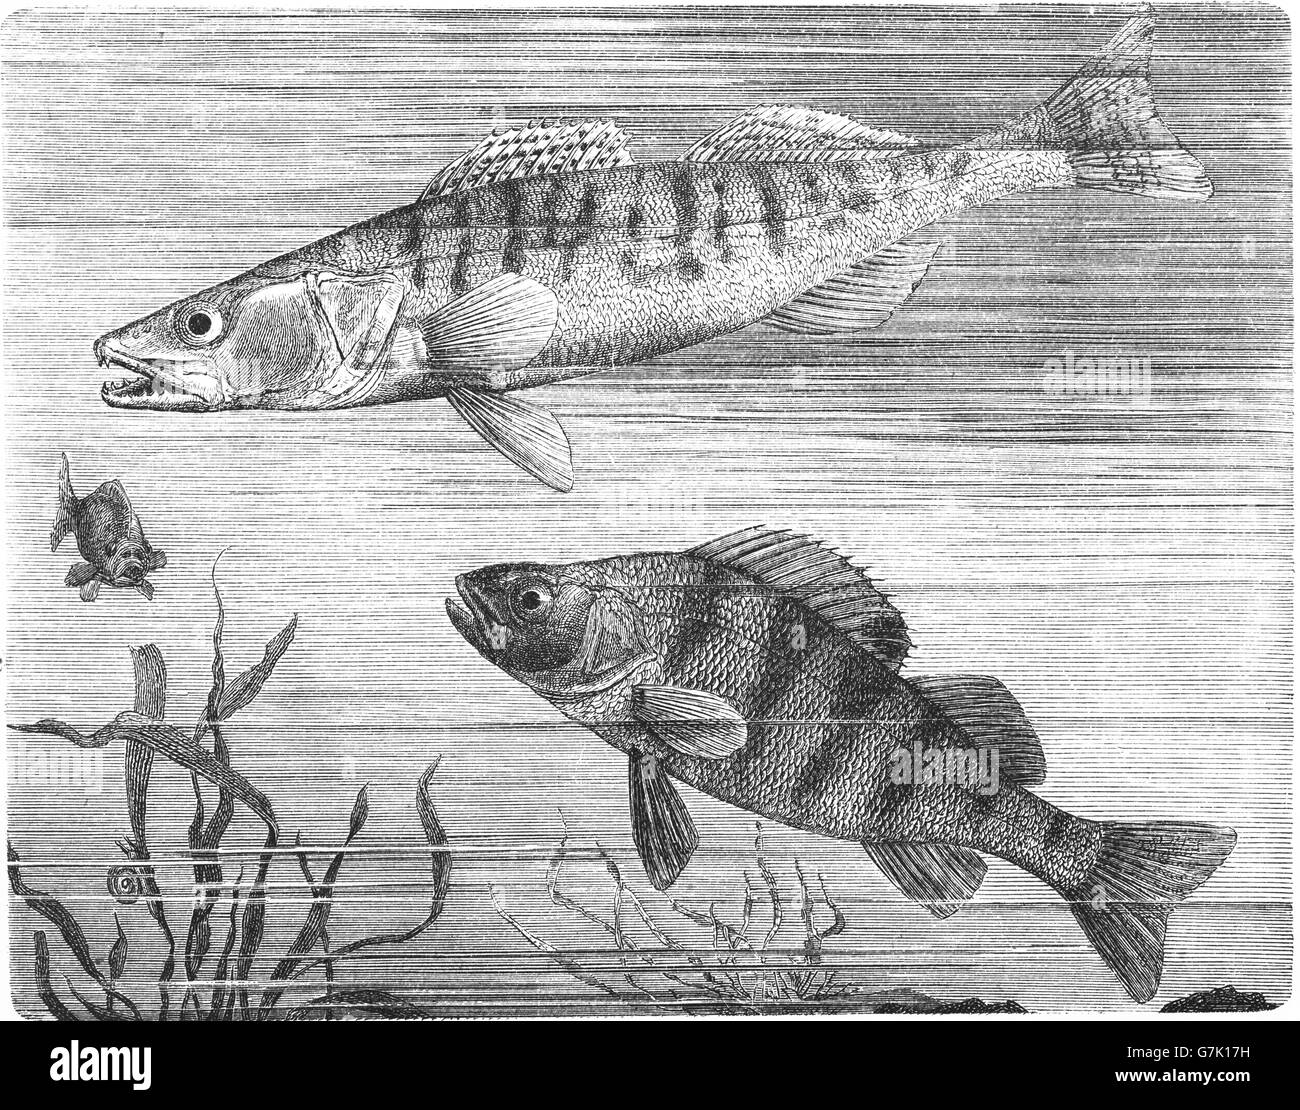 Zander, Sander lucioperca and European perch, Perca fluviatilis, illustration from book dated 1904 Stock Photo